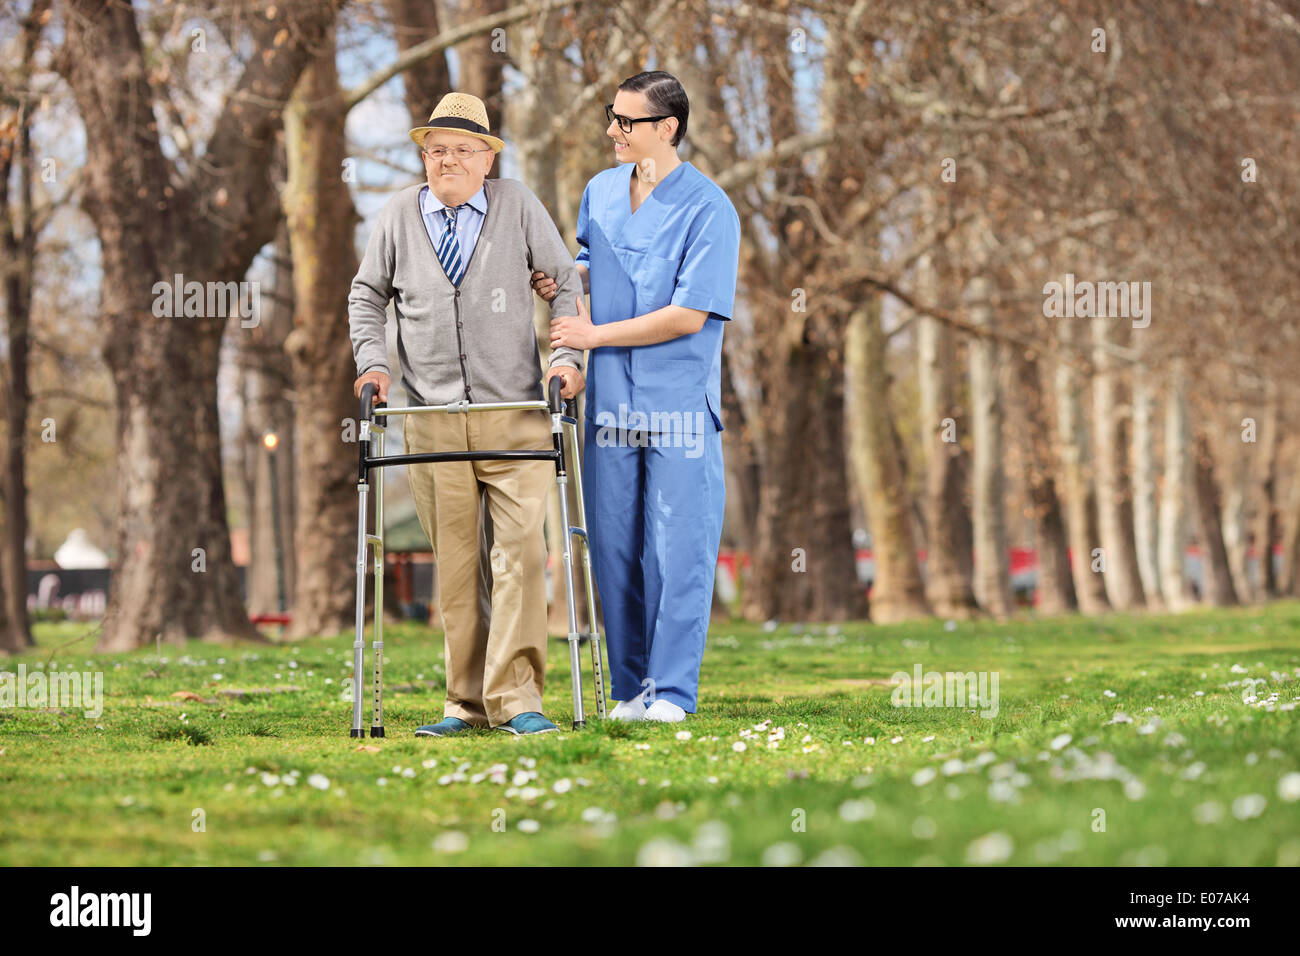 Aider un professionnel médical hauts avec walker in park Banque D'Images